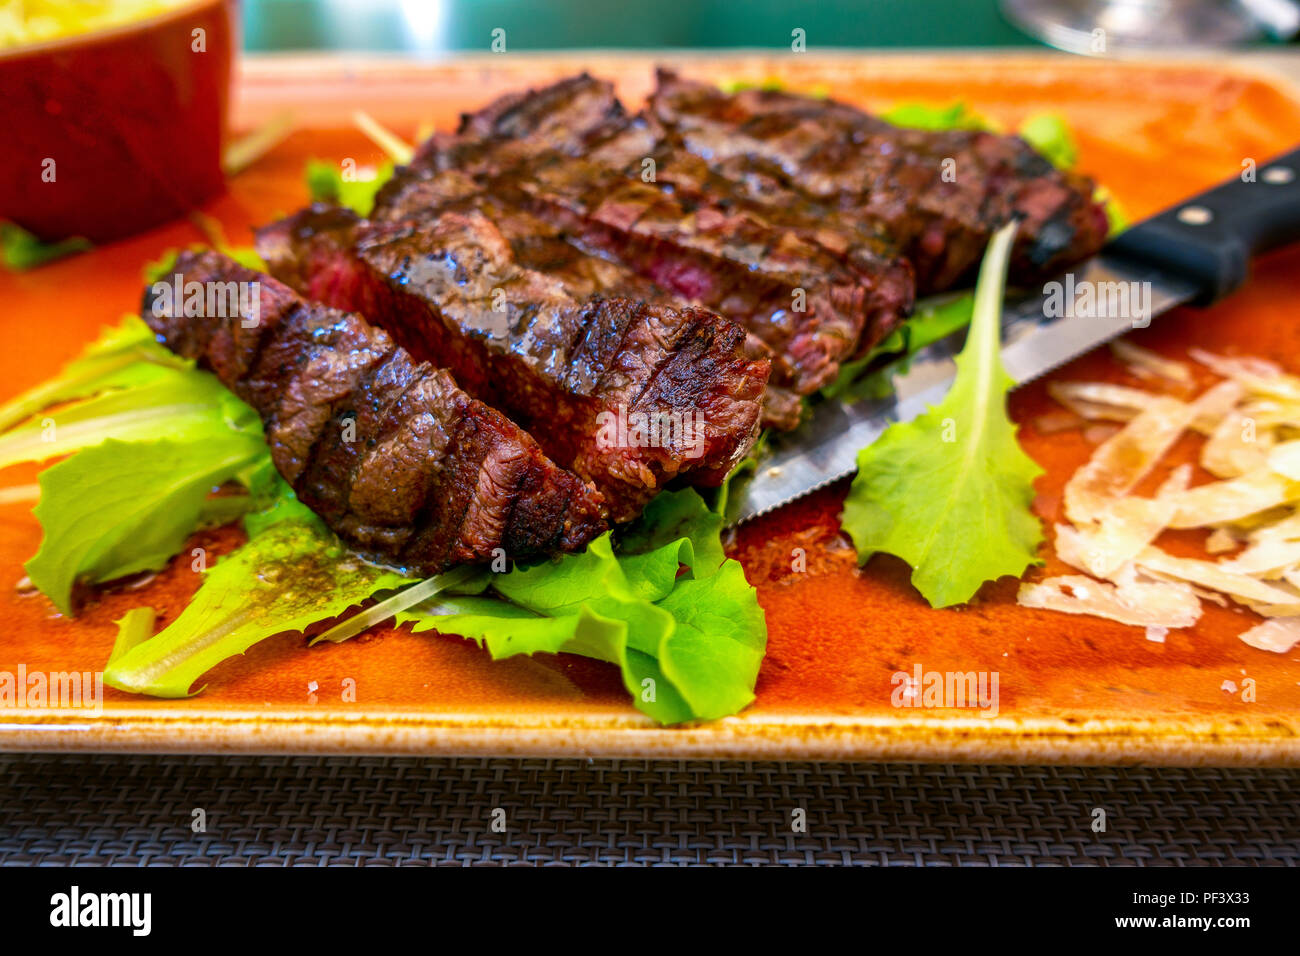 Italien traditionnel steak tagliata de parmesan et salade comme close-up sur une plaque Banque D'Images